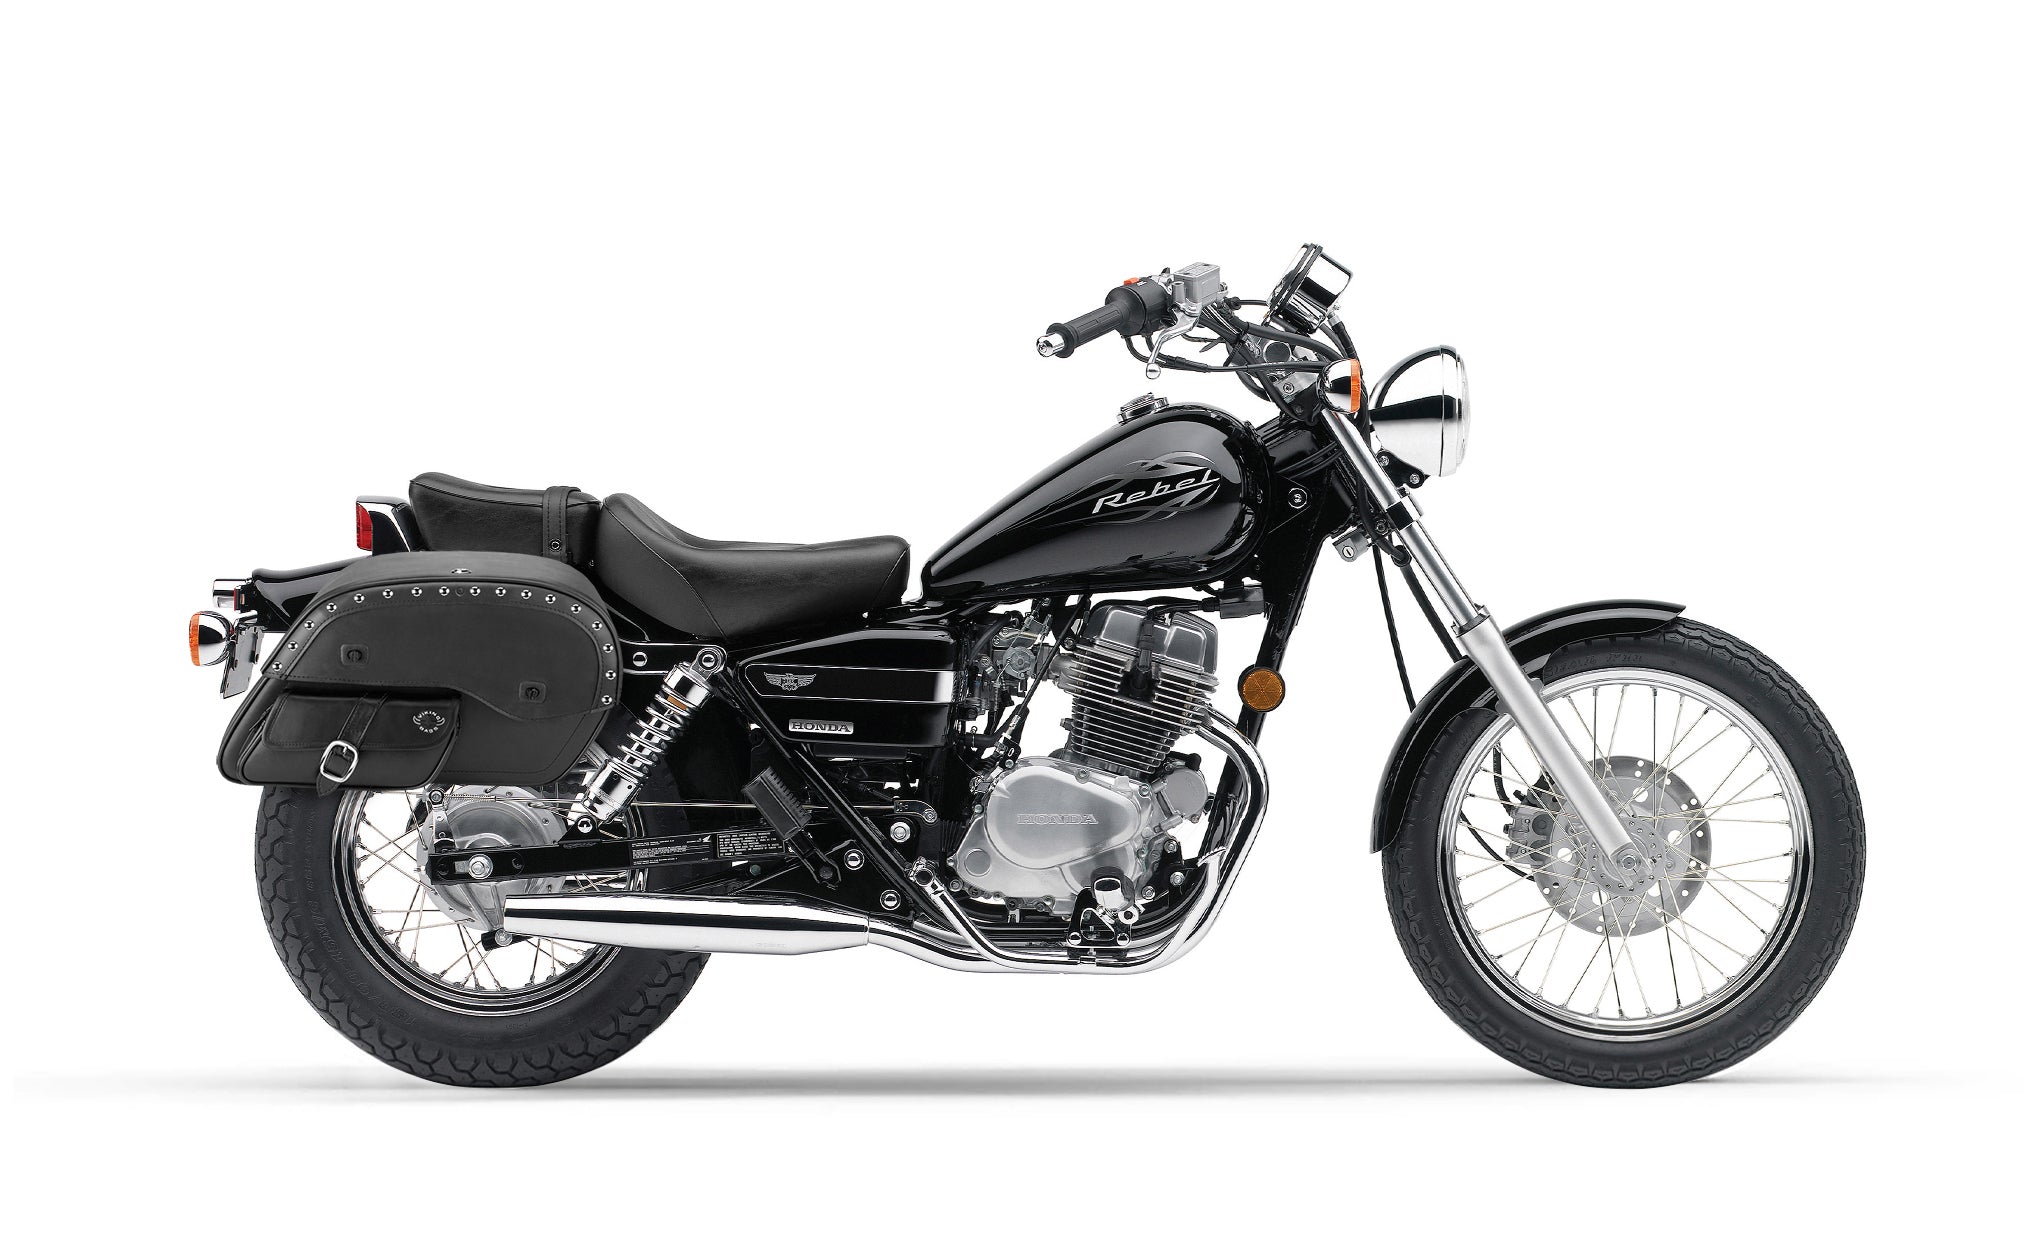 Viking Essential Side Pocket Large Honda Rebel 250 Leather Studded Motorcycle Saddlebags on Bike Photo @expand